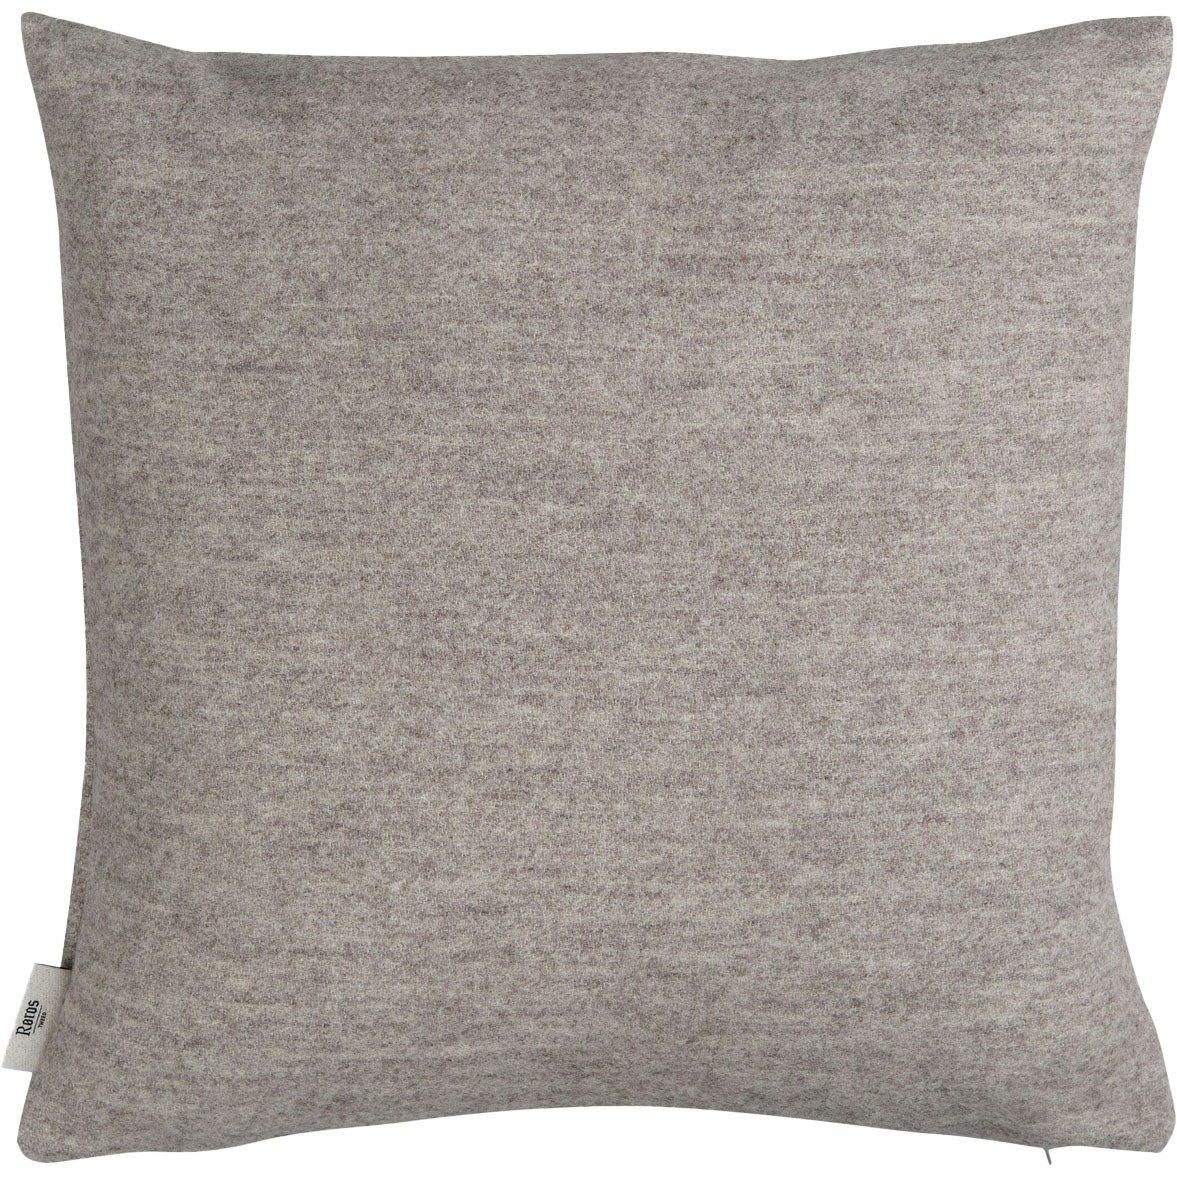 Stemor Cushion 50x50 cm, Grey